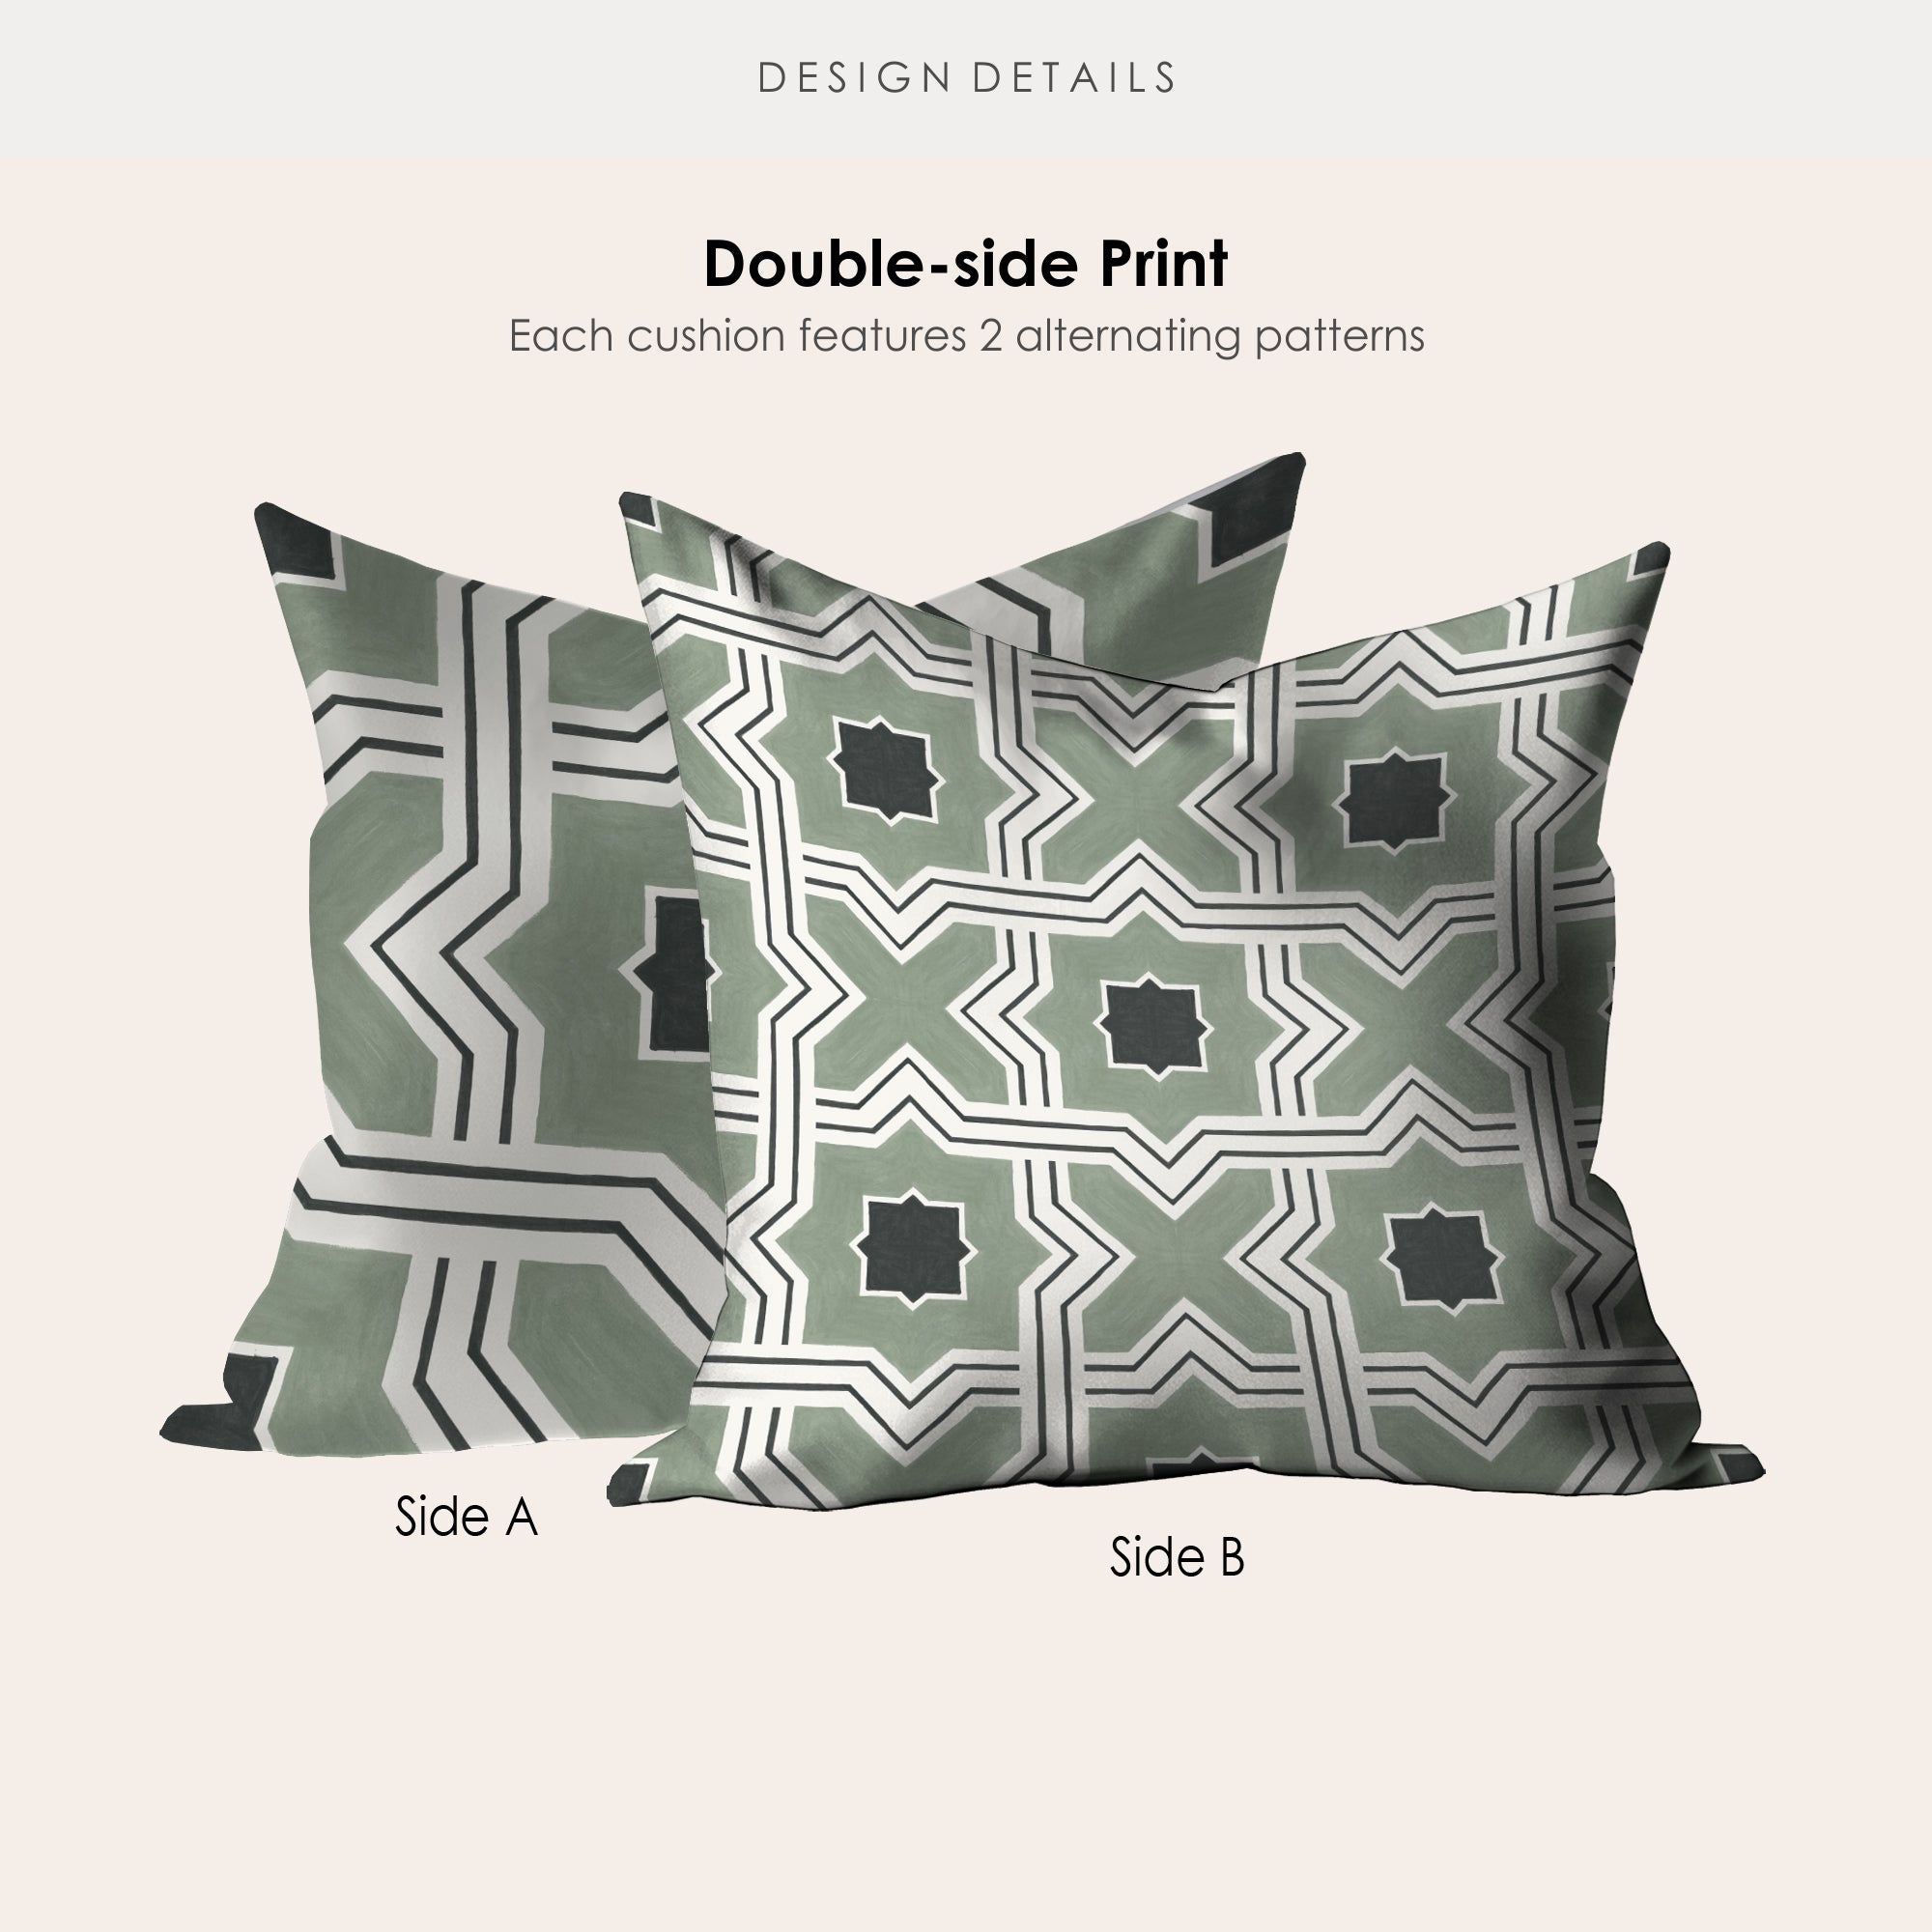 Lattice Pea Green Microsuede Square Pillow Cover